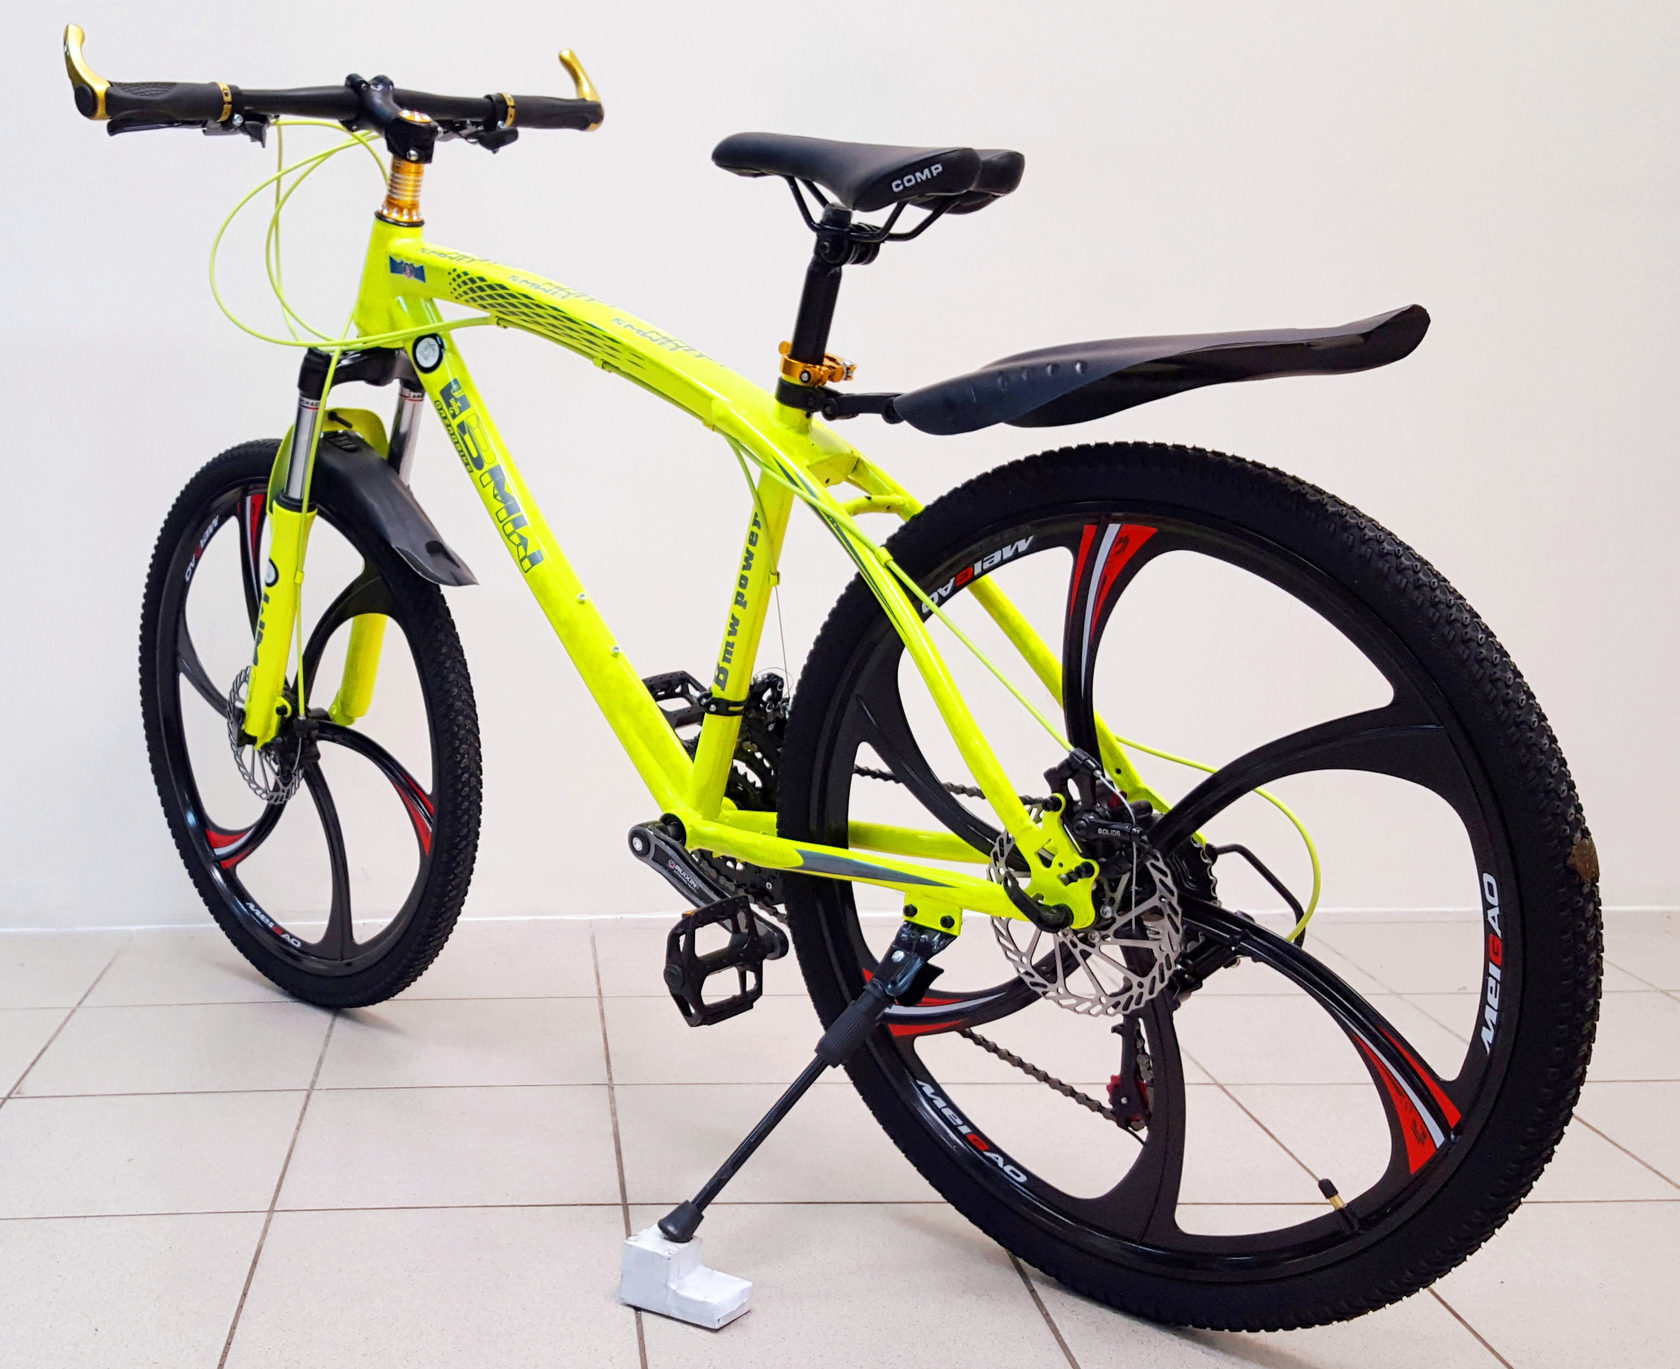 Купить велосипед в москве дешево. Велосипед BMW 26. Велосипед 26" hemen ytj-MTB-55 (литые обода 6 лучей-черные, диск.торм.21ск). Спортивный скоростной велосипед. Спортивный велосипед на литых дисках.